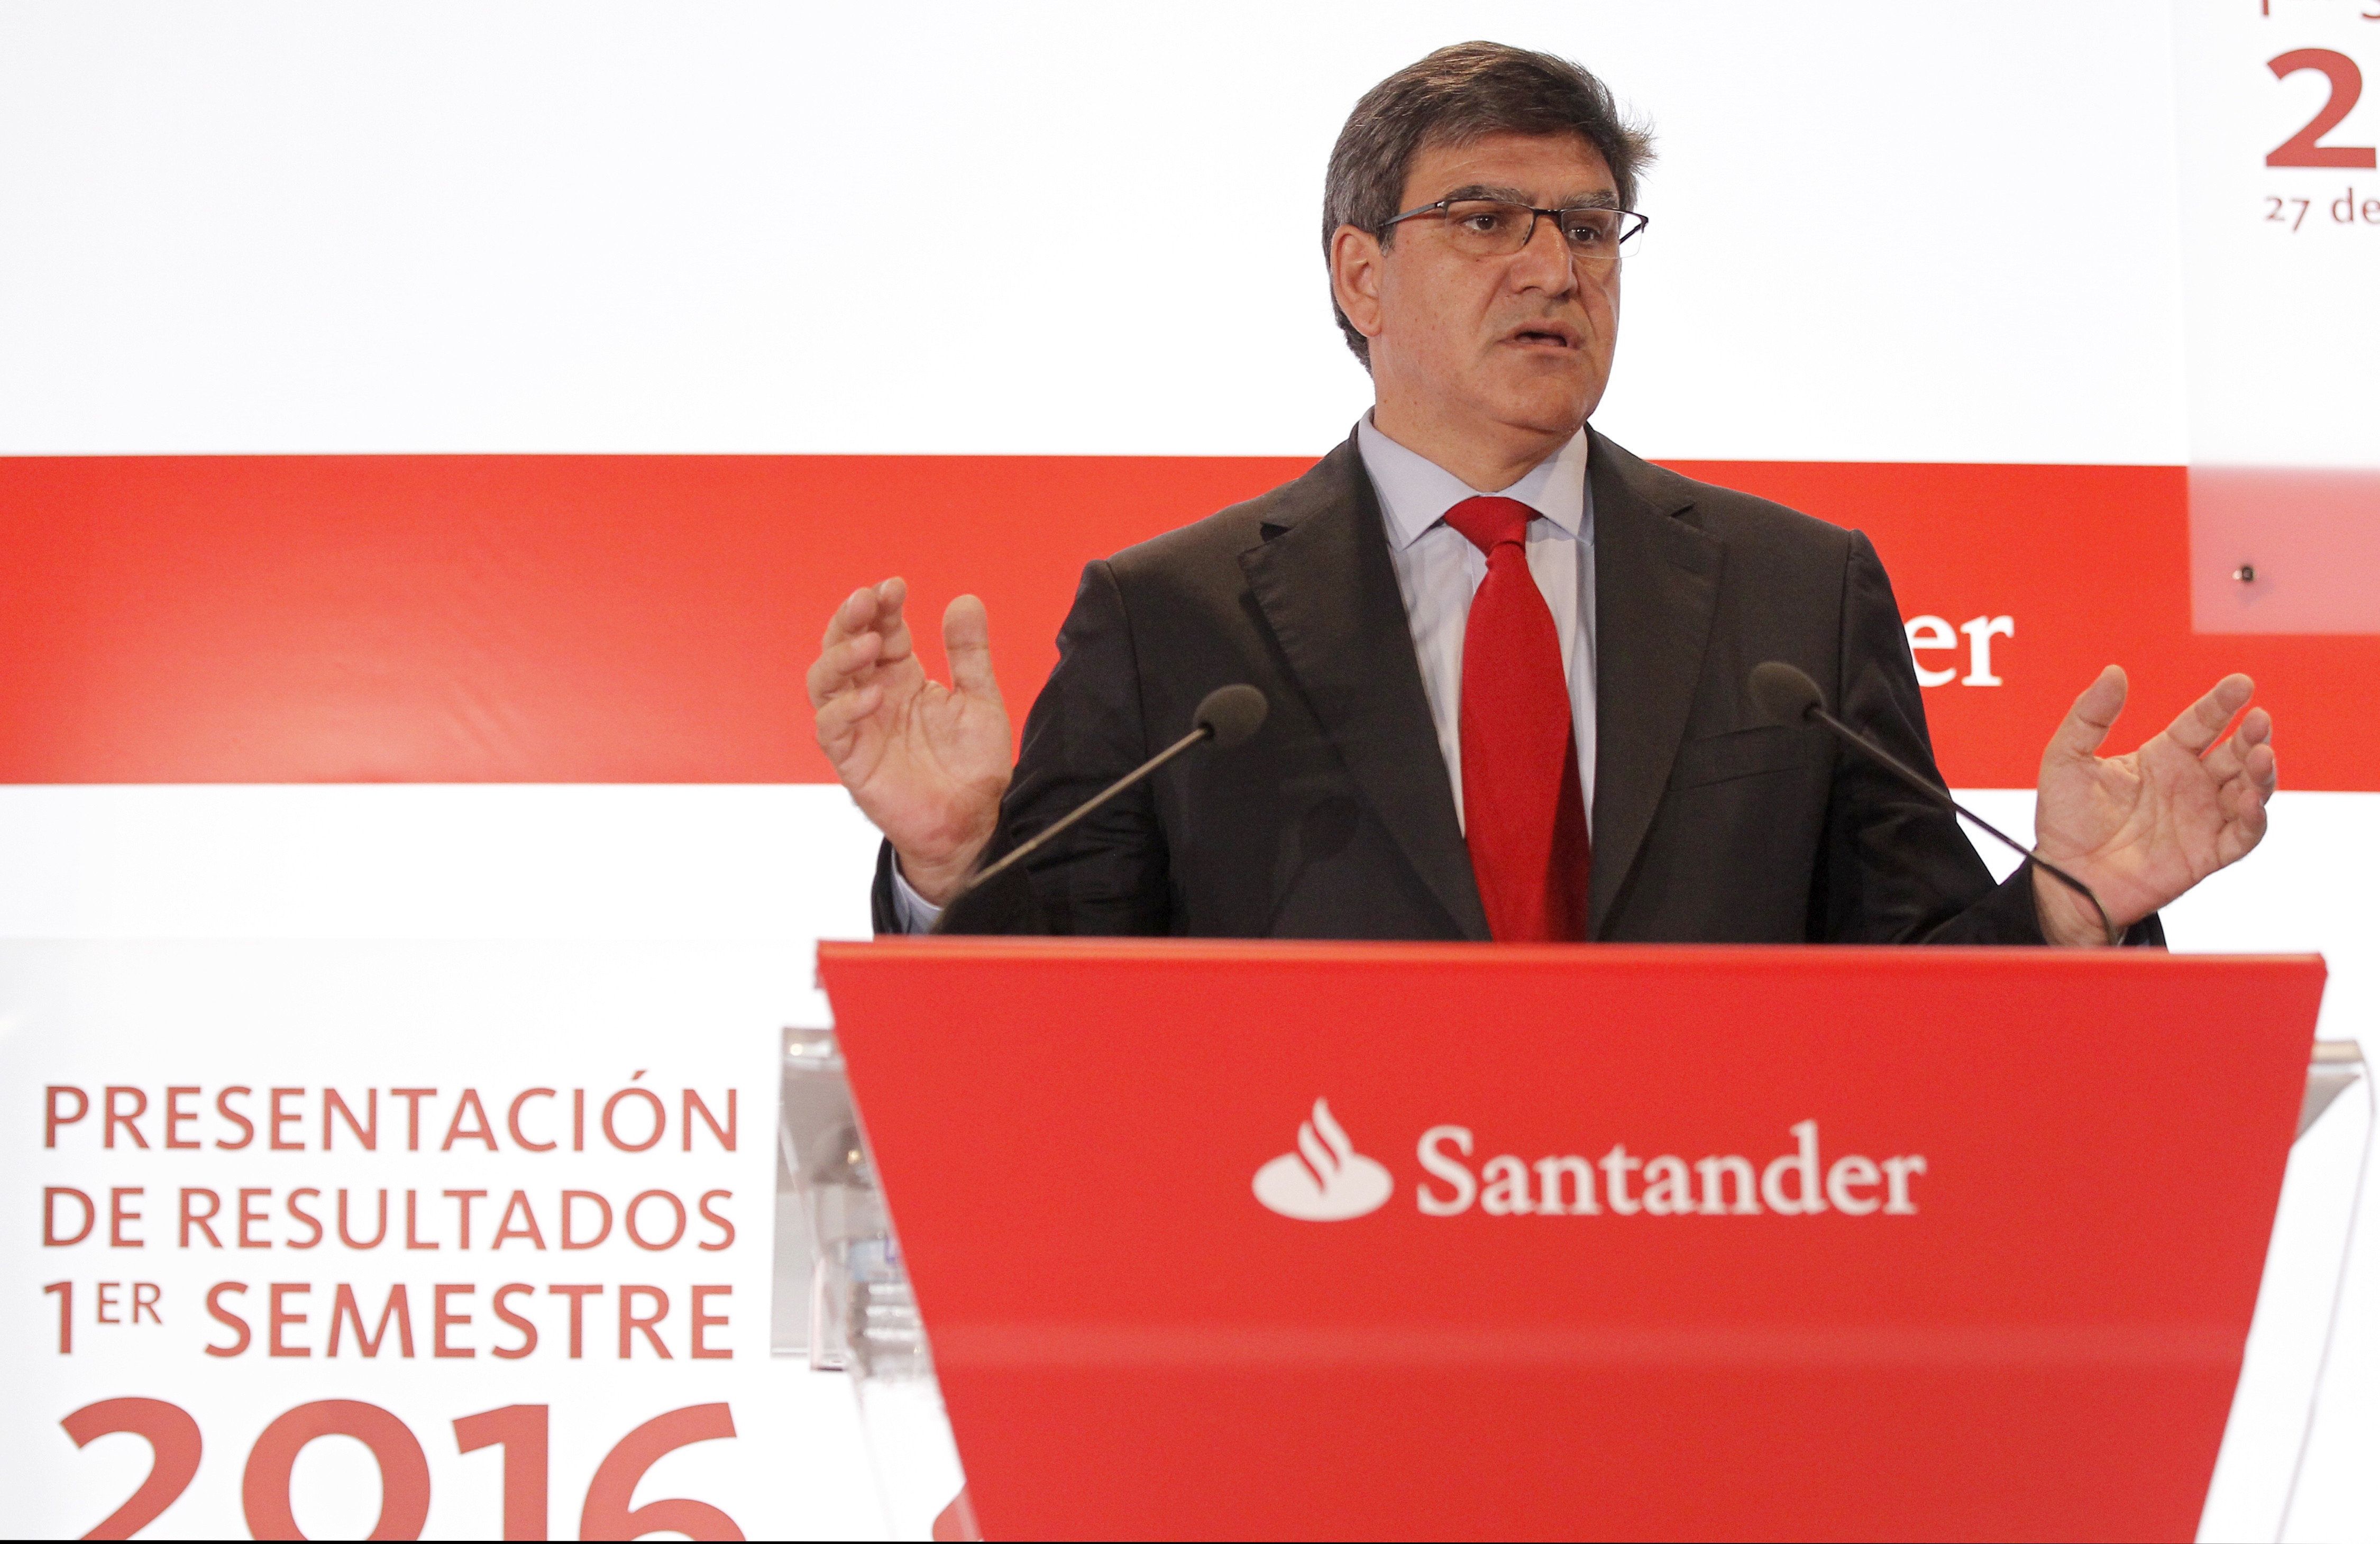 Banco Santander gana 2.911 millones y pide un gobierno "estable"